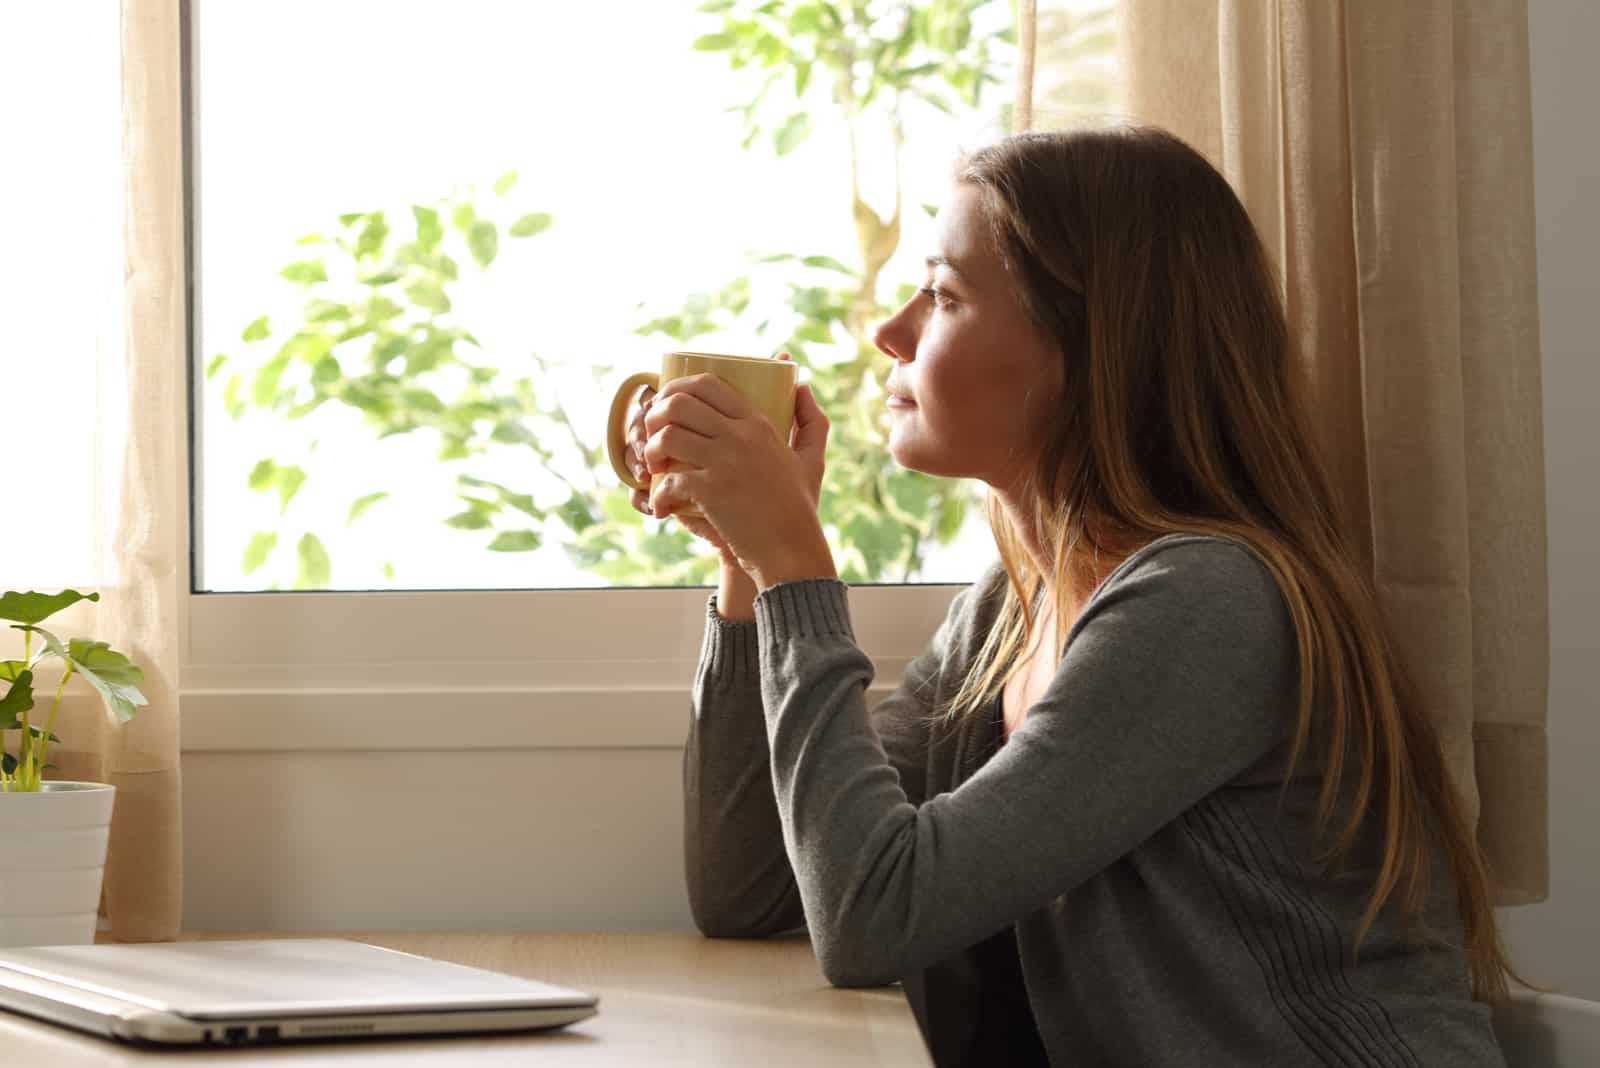 Une femme imaginaire assise près de la fenêtre tenant une tasse à la main